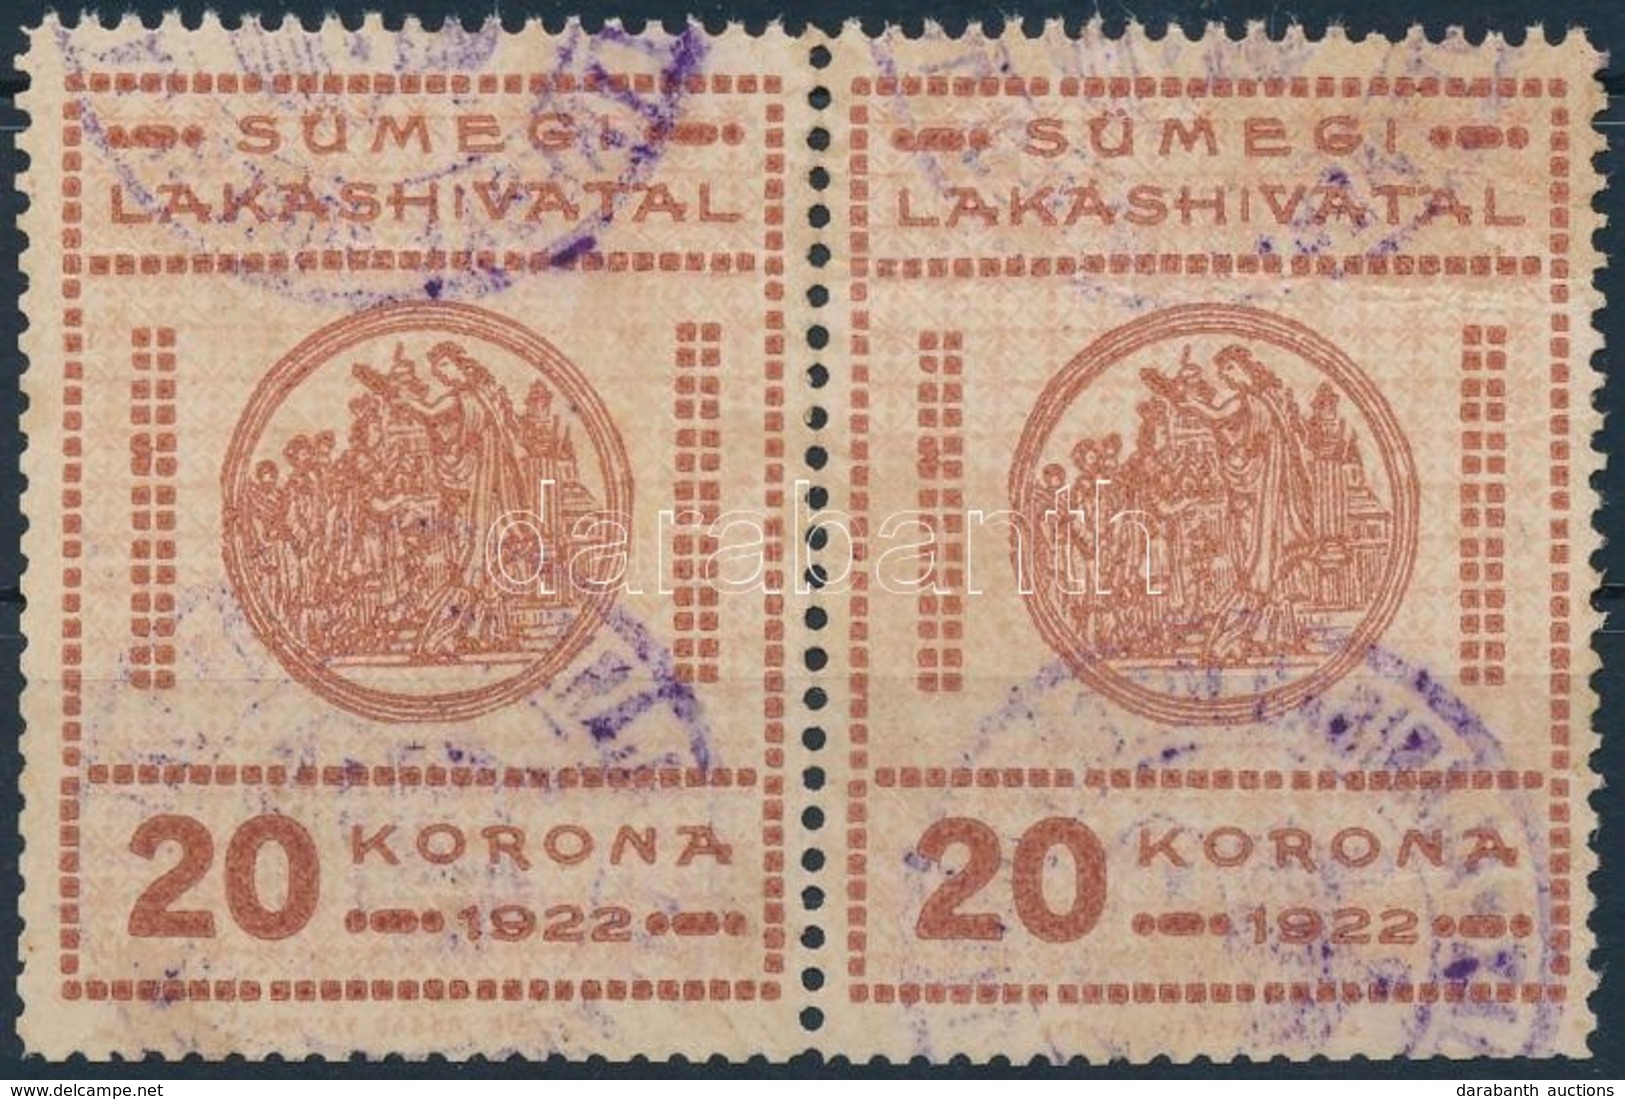 1922 Sümeg Városi Lakáshivatali Bélyeg 20K Pár (24.000) - Unclassified